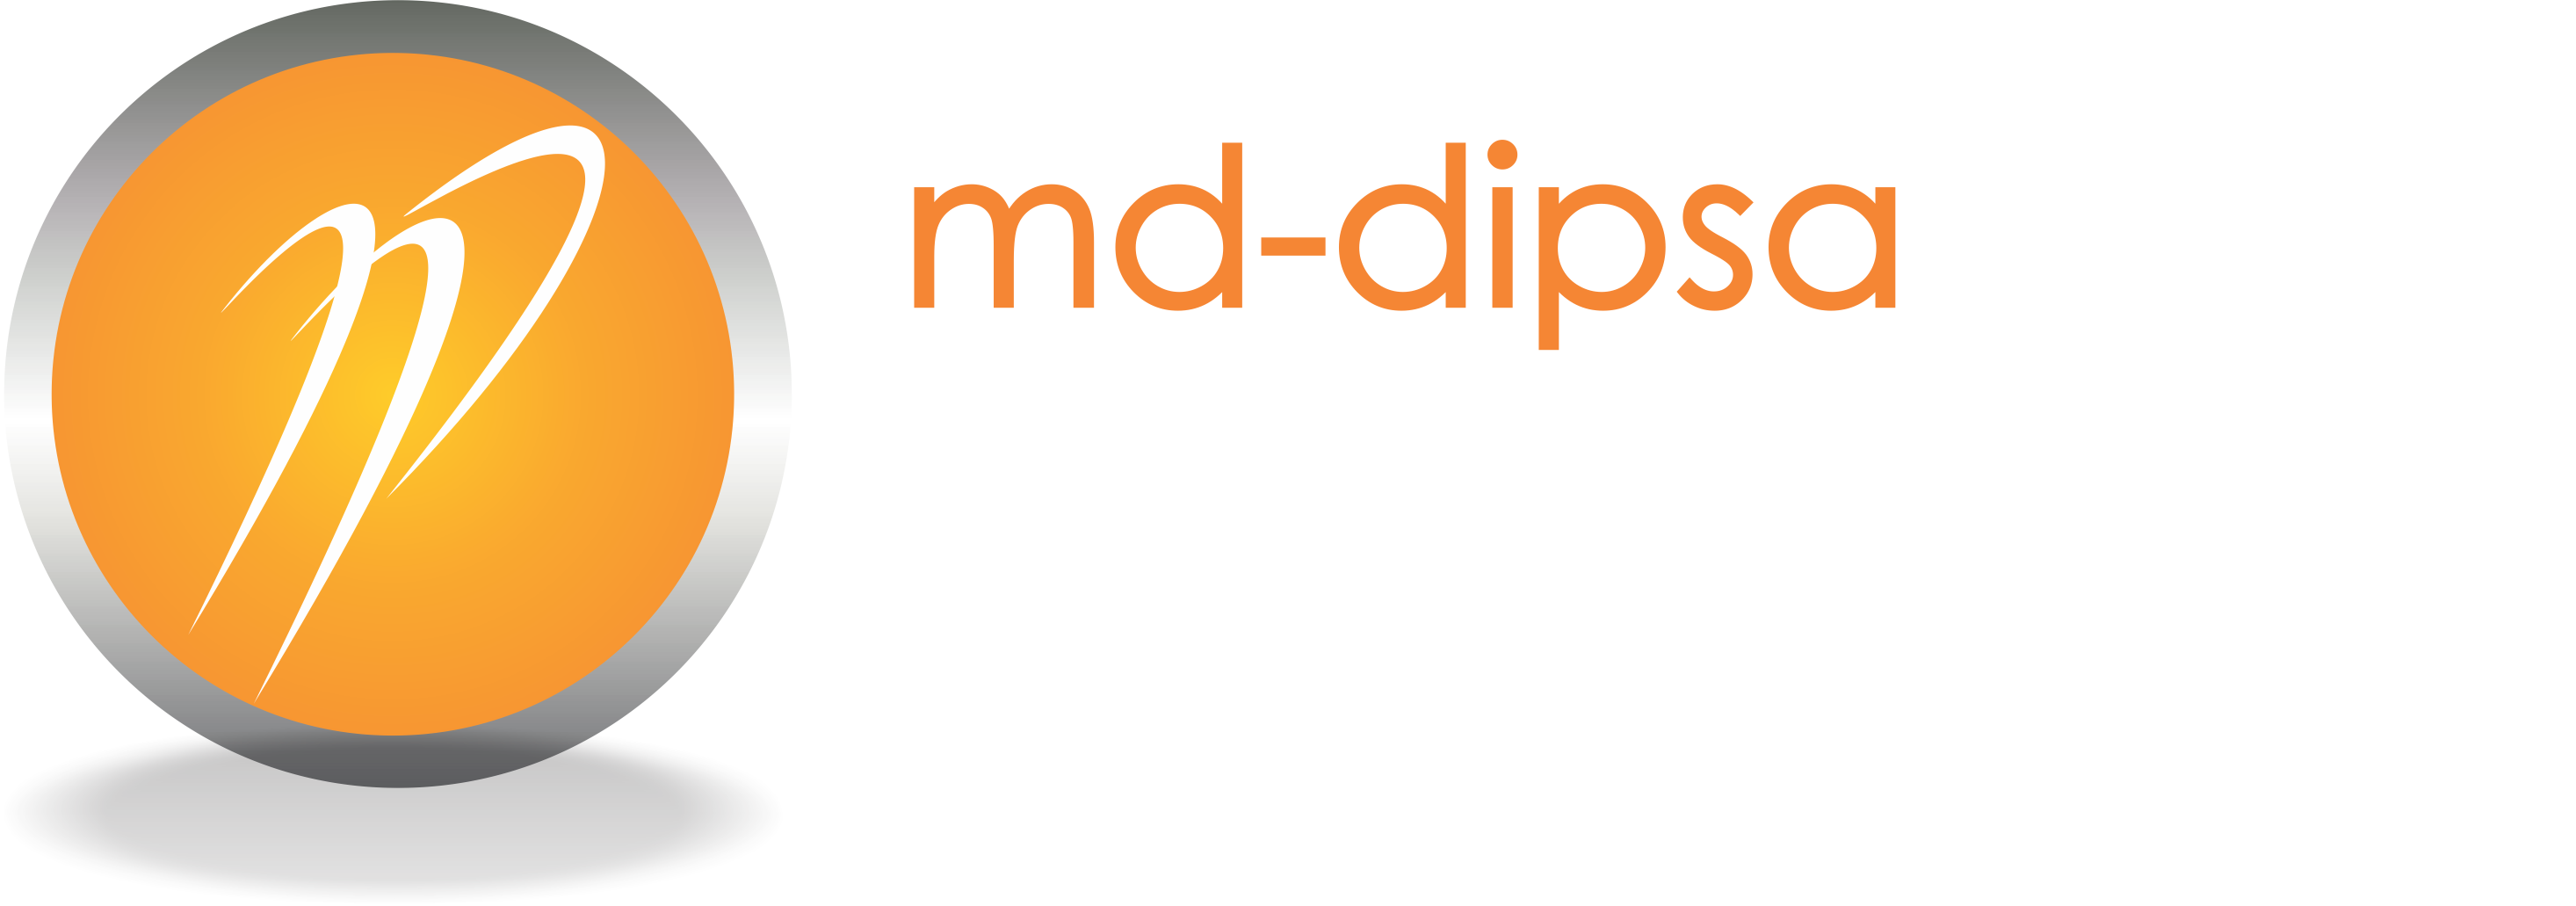 MD-DIPSA